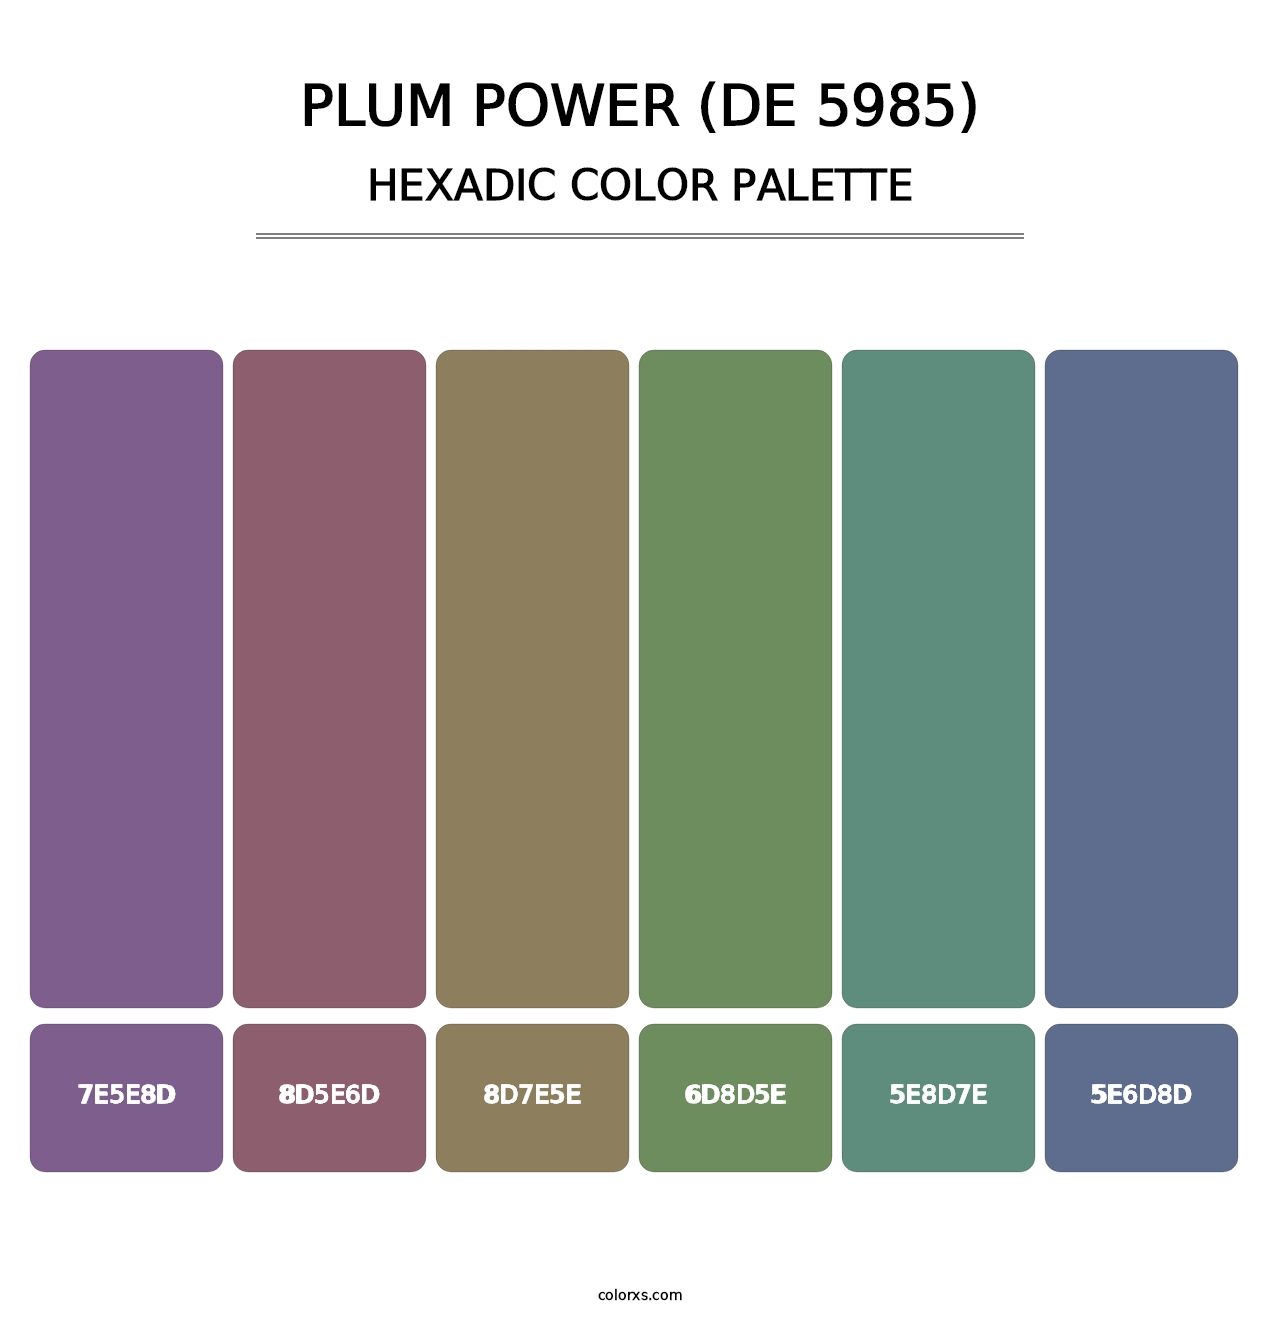 Plum Power (DE 5985) - Hexadic Color Palette